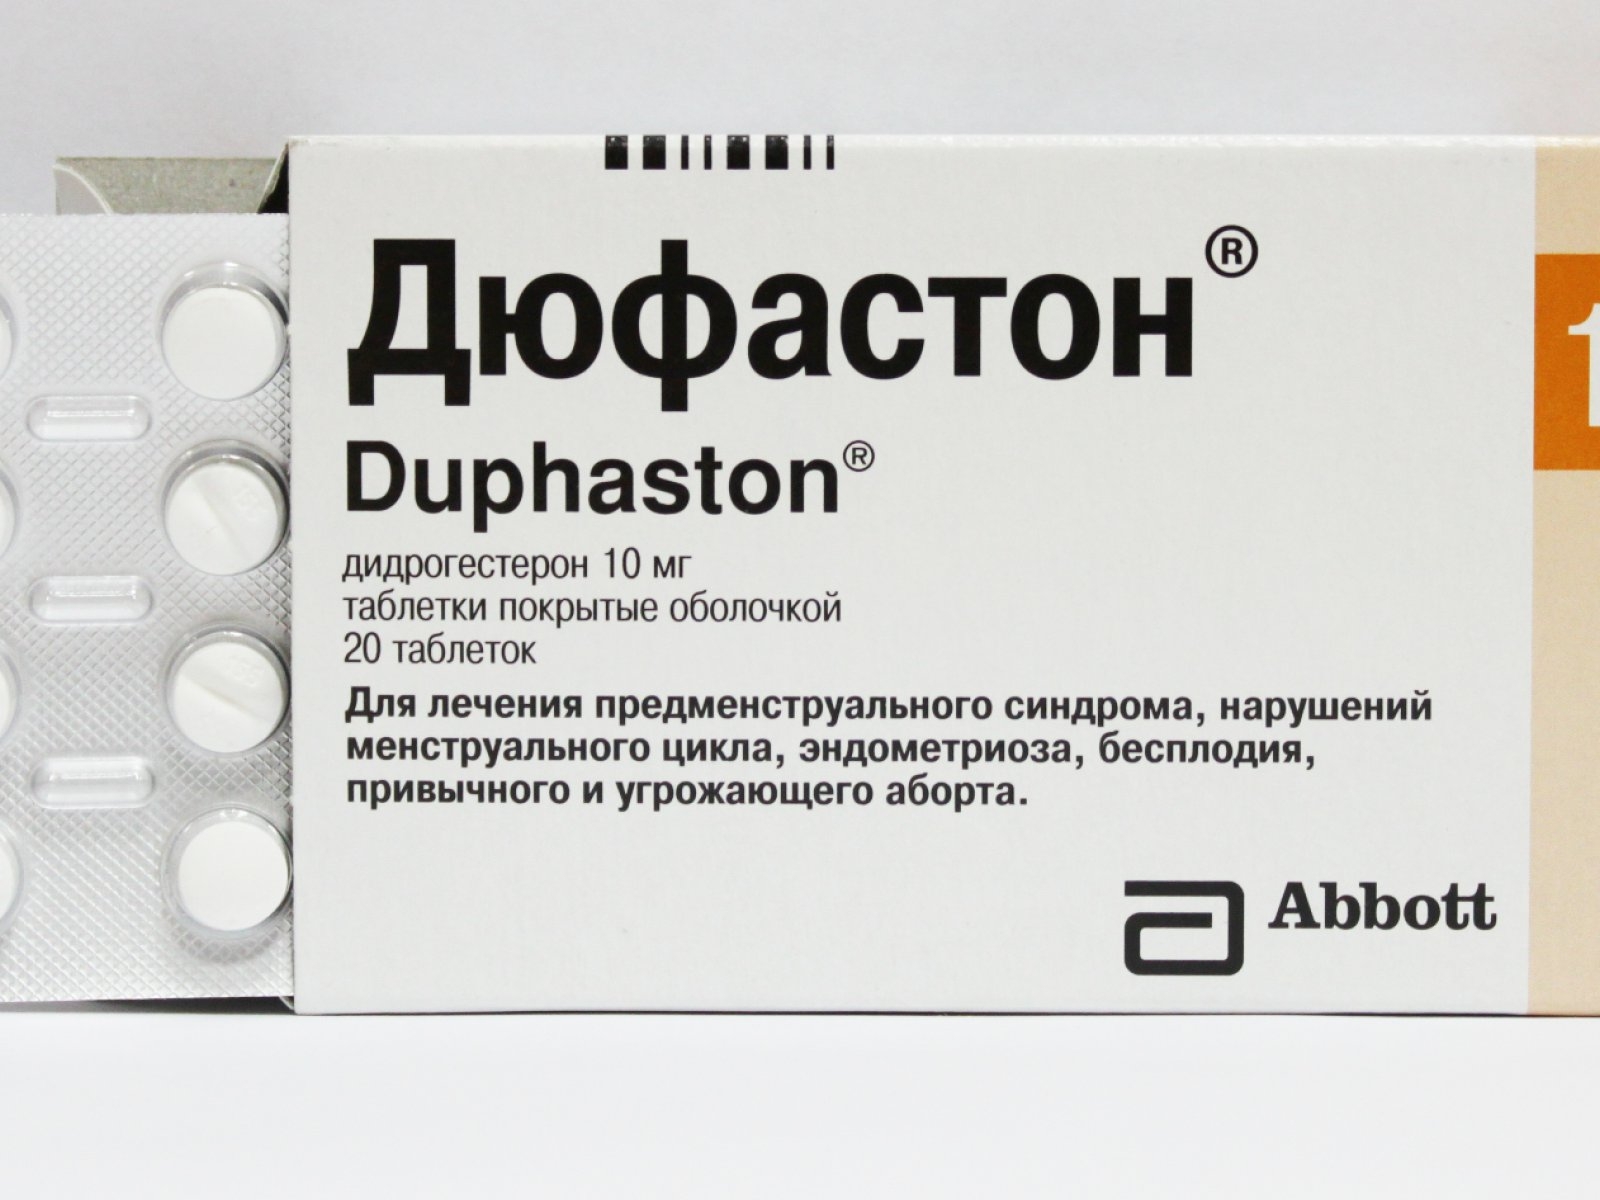 Препарат содержит дидрогестерон, синтетических стероидный гормон